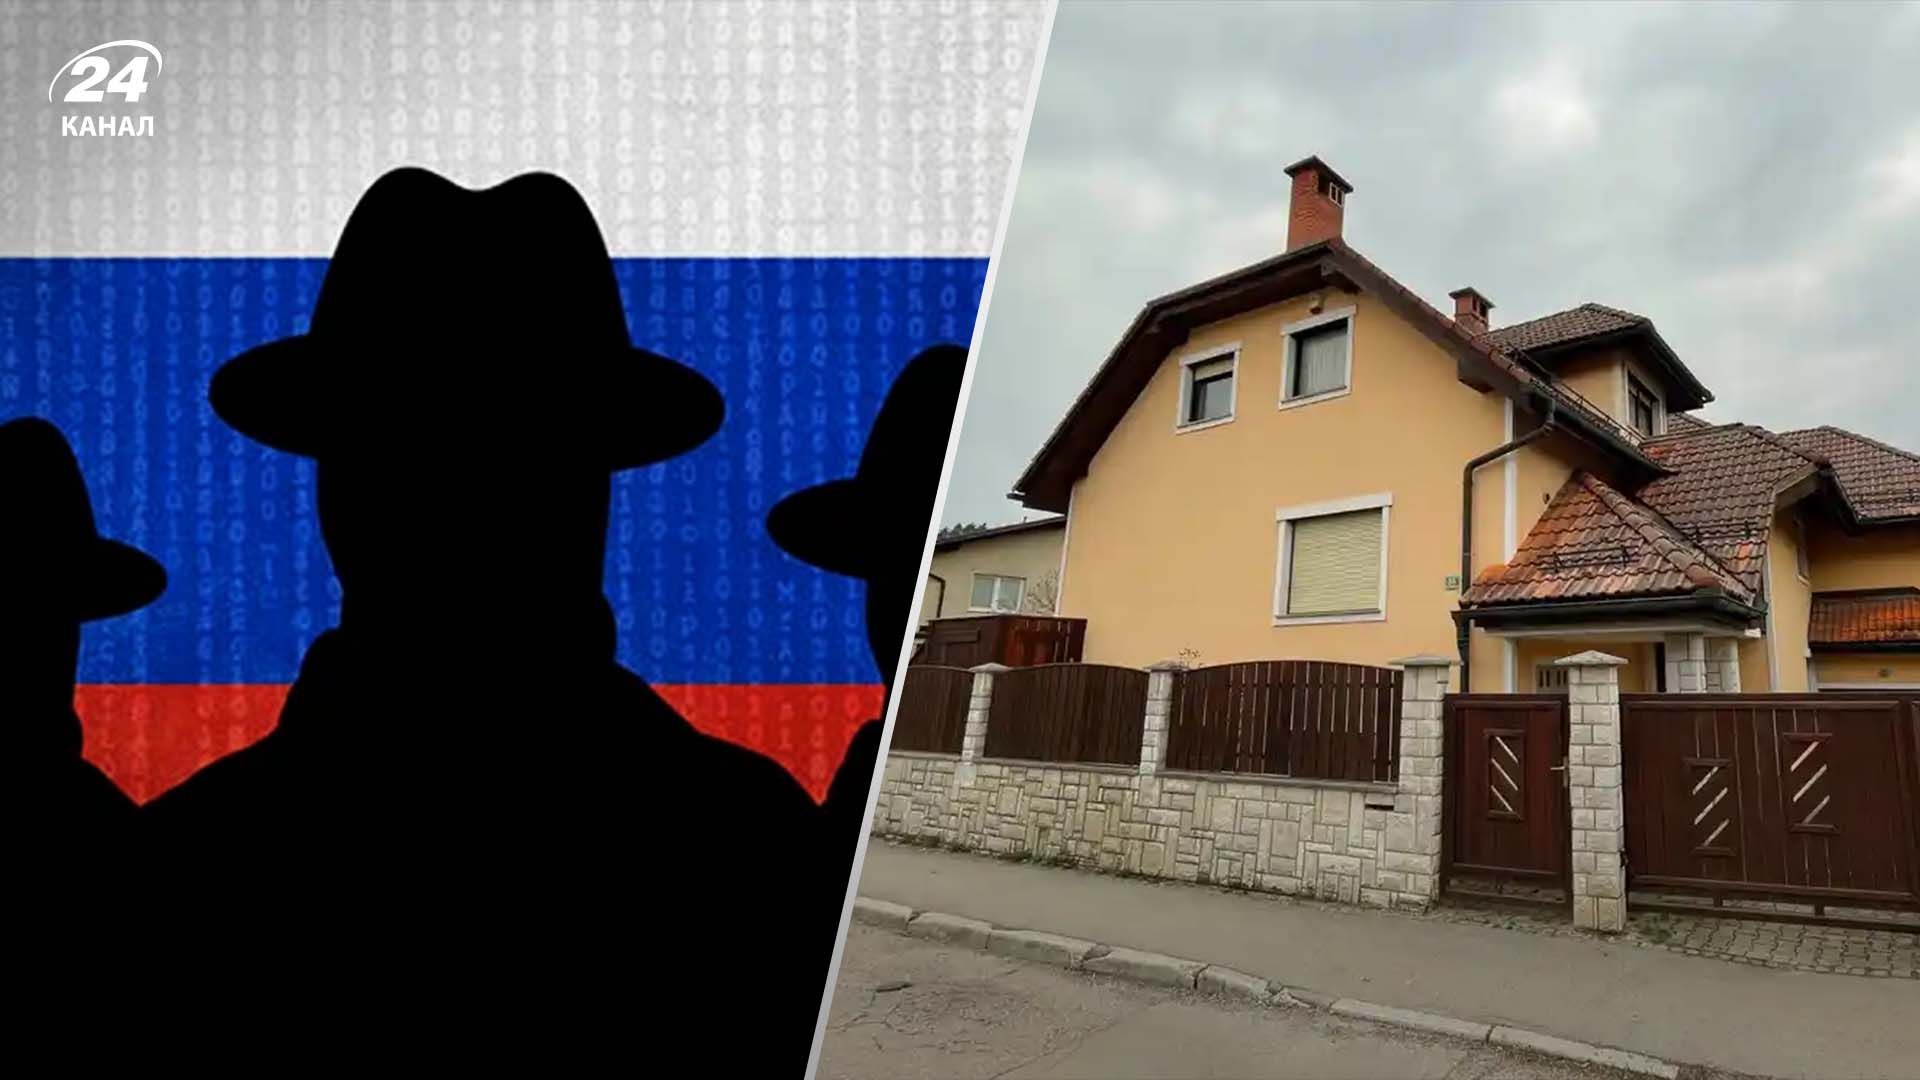 Как обычная семья, а на самом деле – российские шпионы, – The Guardian о скандале в Словении - 24 Канал